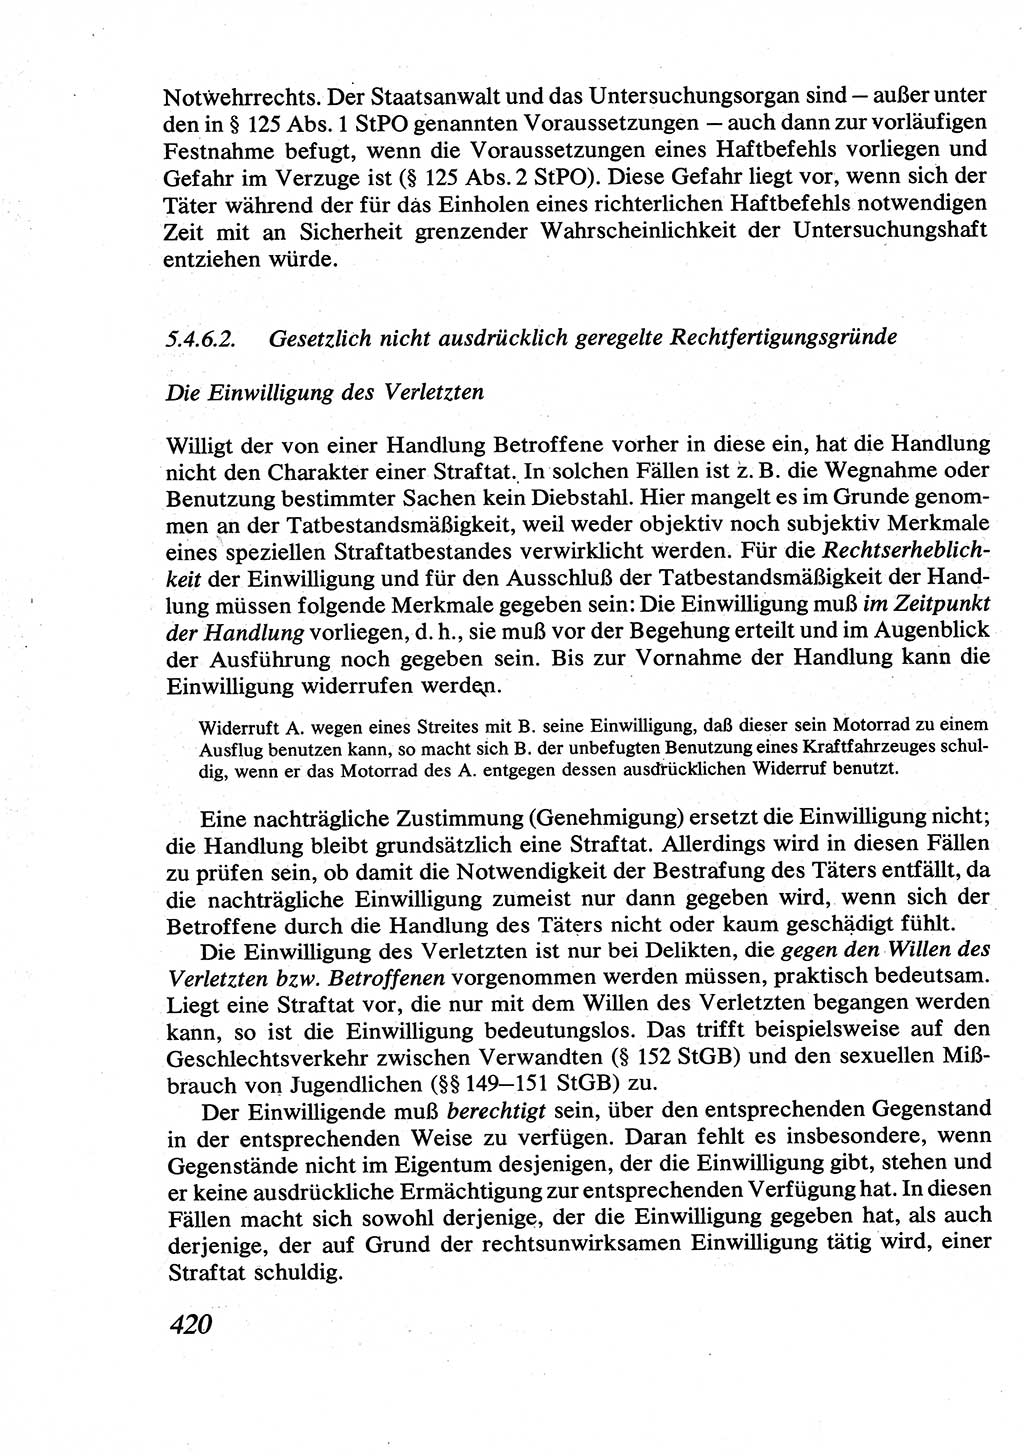 Strafrecht [Deutsche Demokratische Republik (DDR)], Allgemeiner Teil, Lehrbuch 1976, Seite 420 (Strafr. DDR AT Lb. 1976, S. 420)